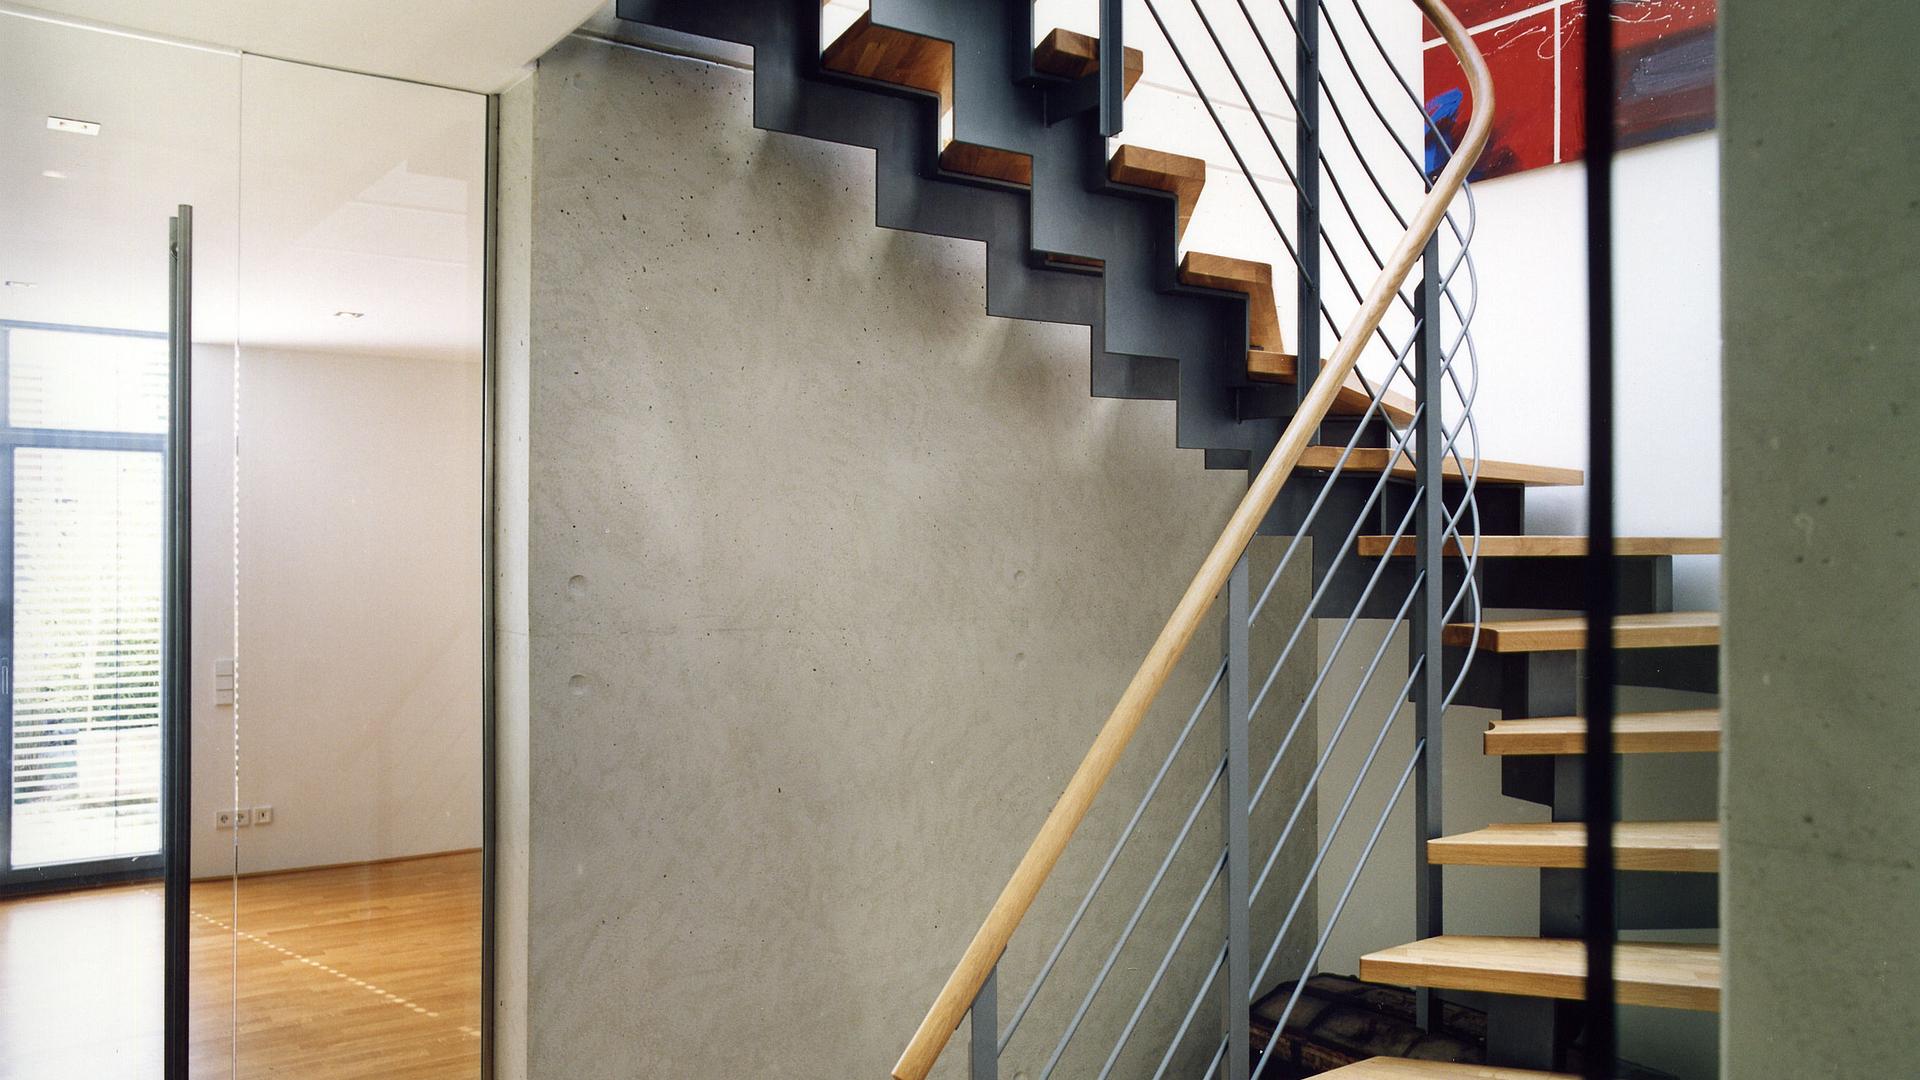 Bild: Details der Holz-Stahl-Treppe